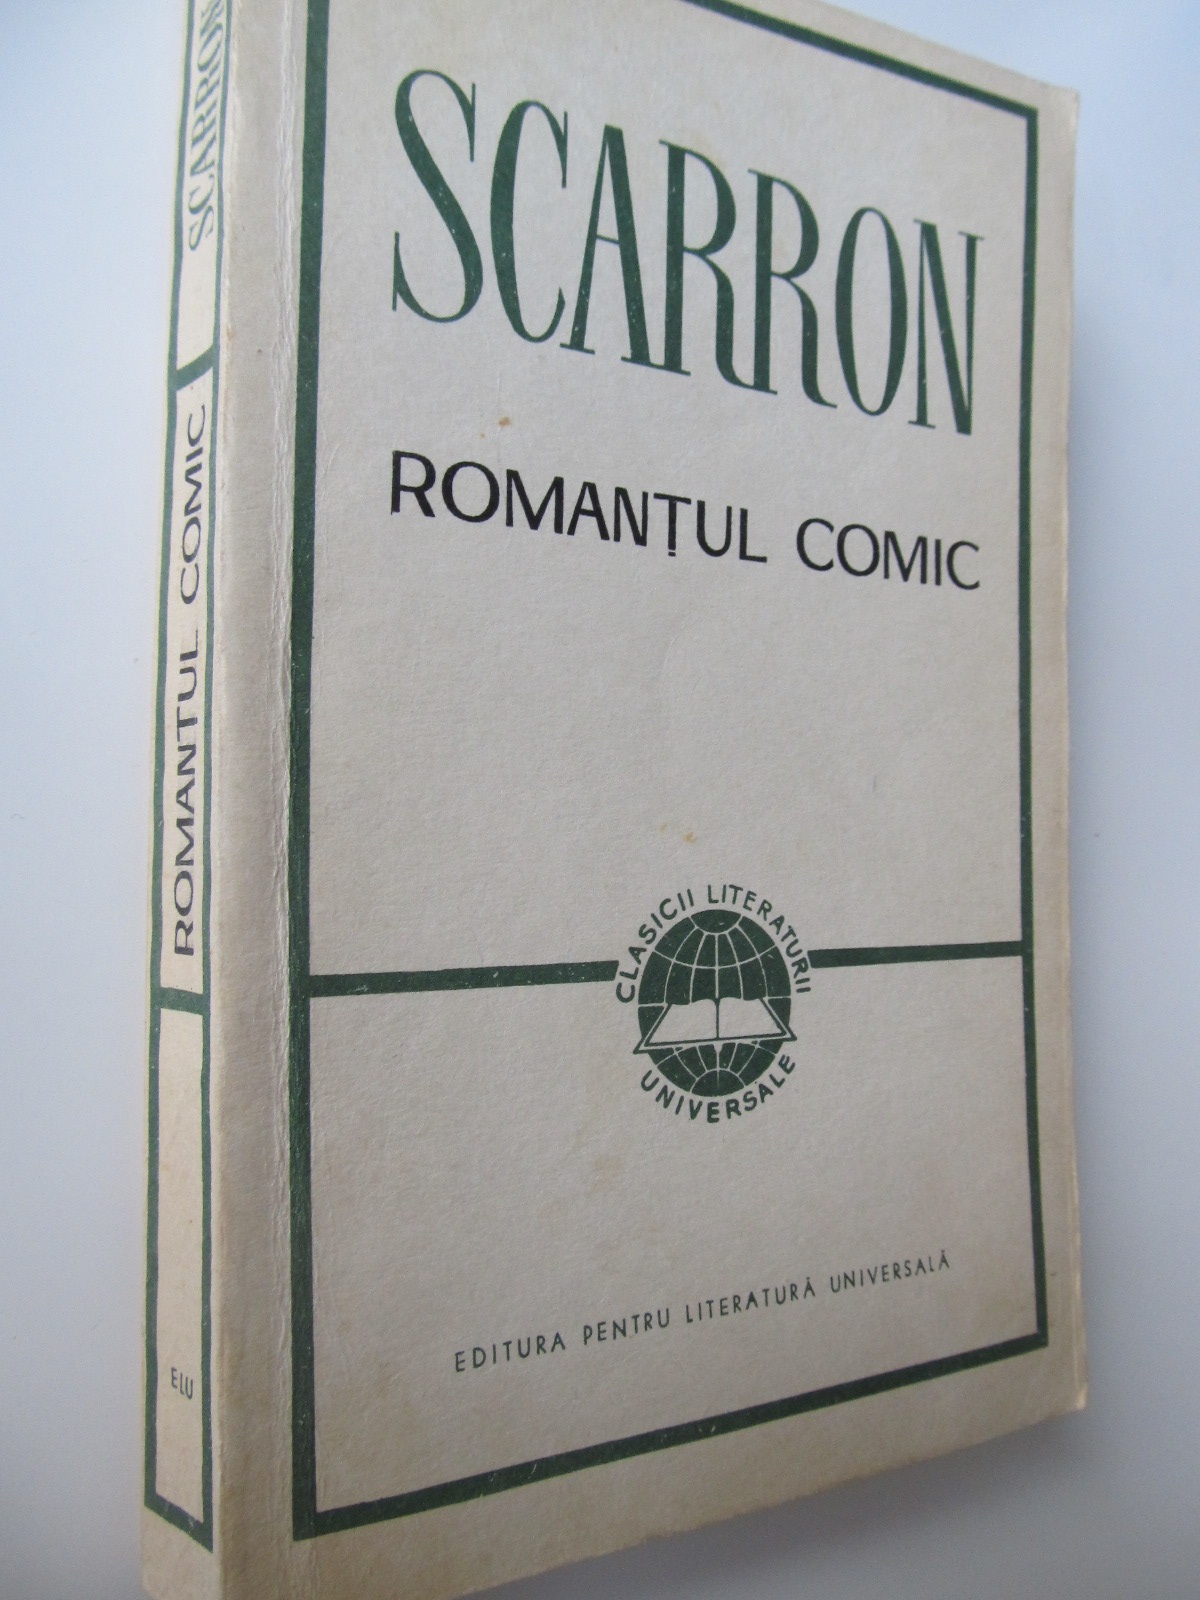 Romantul comic - Scarron | Detalii carte